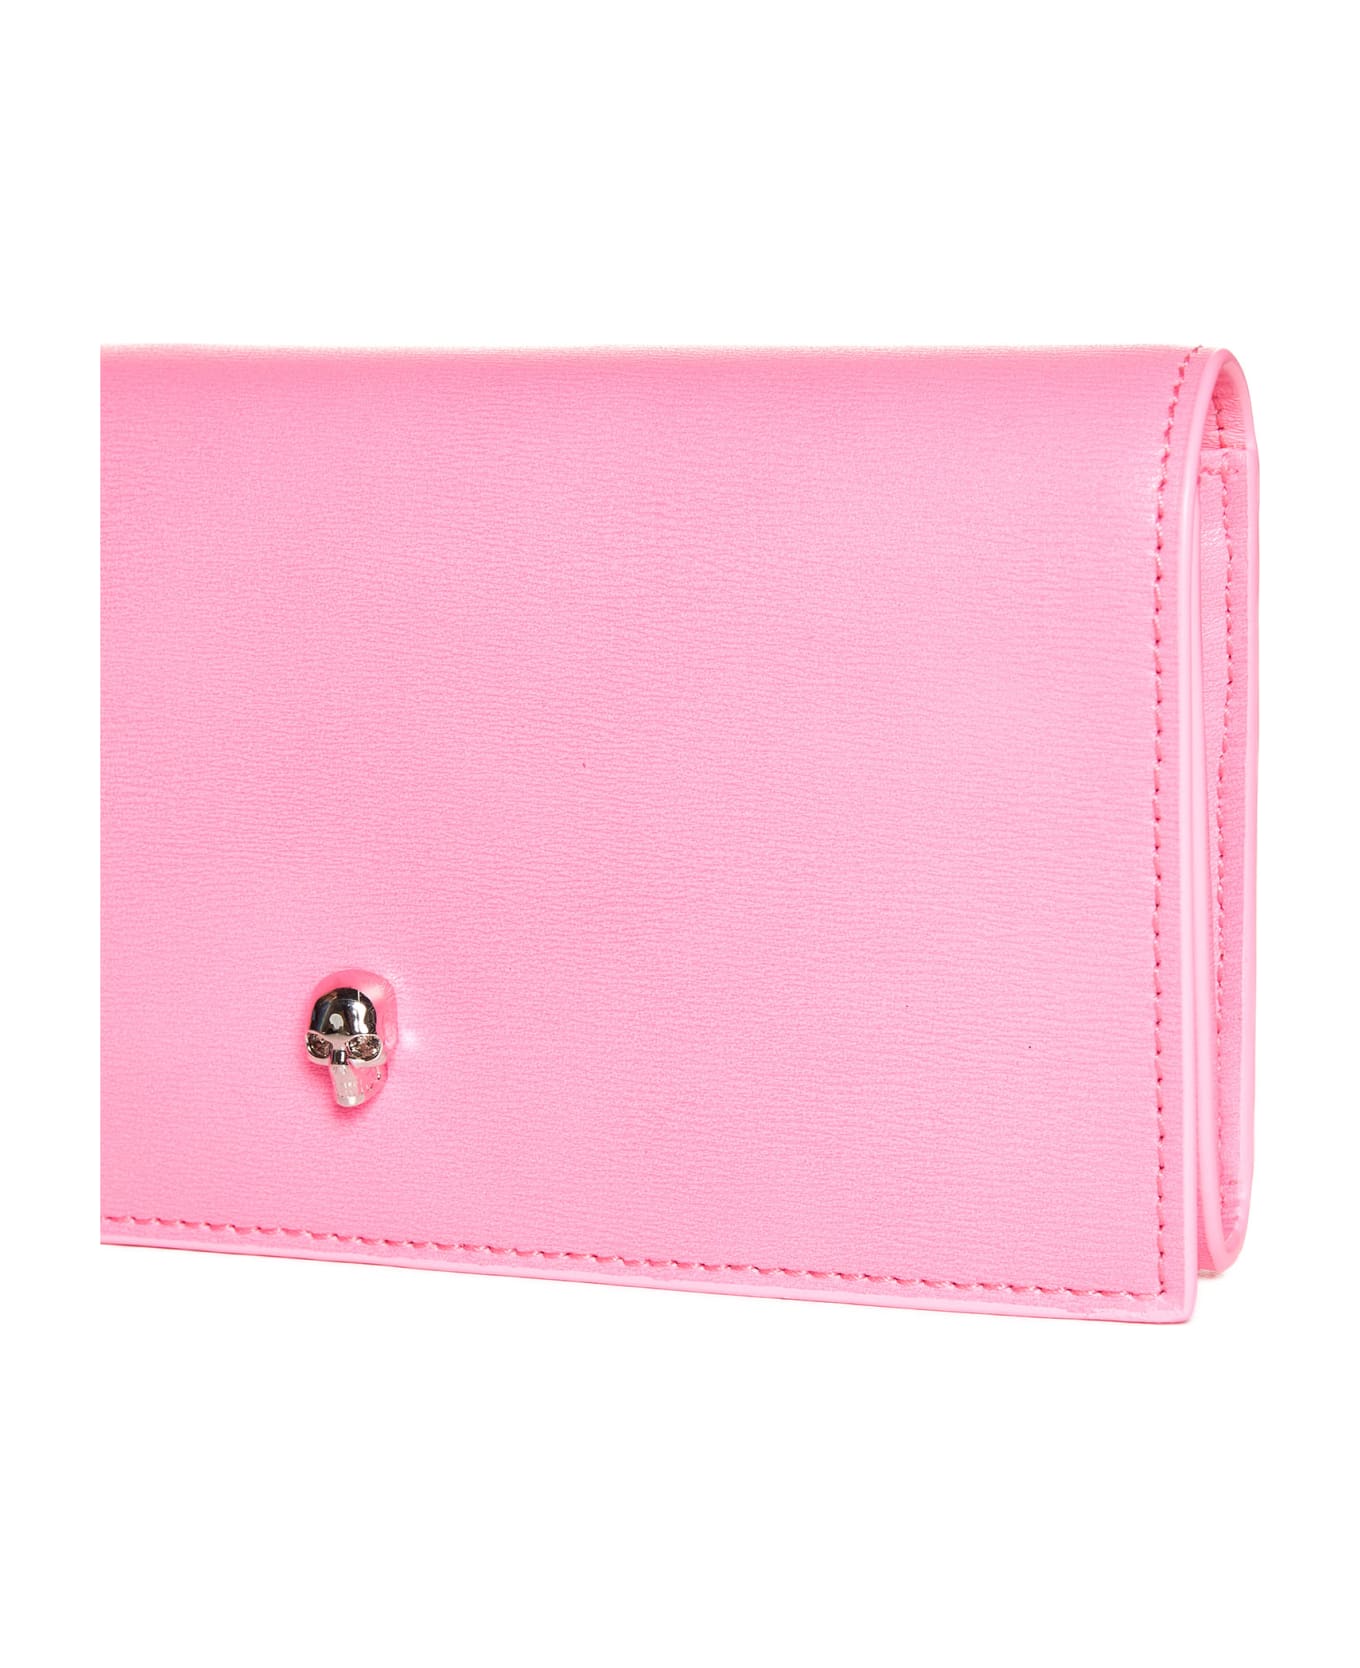 Alexander McQueen Wallet - Fluo pink